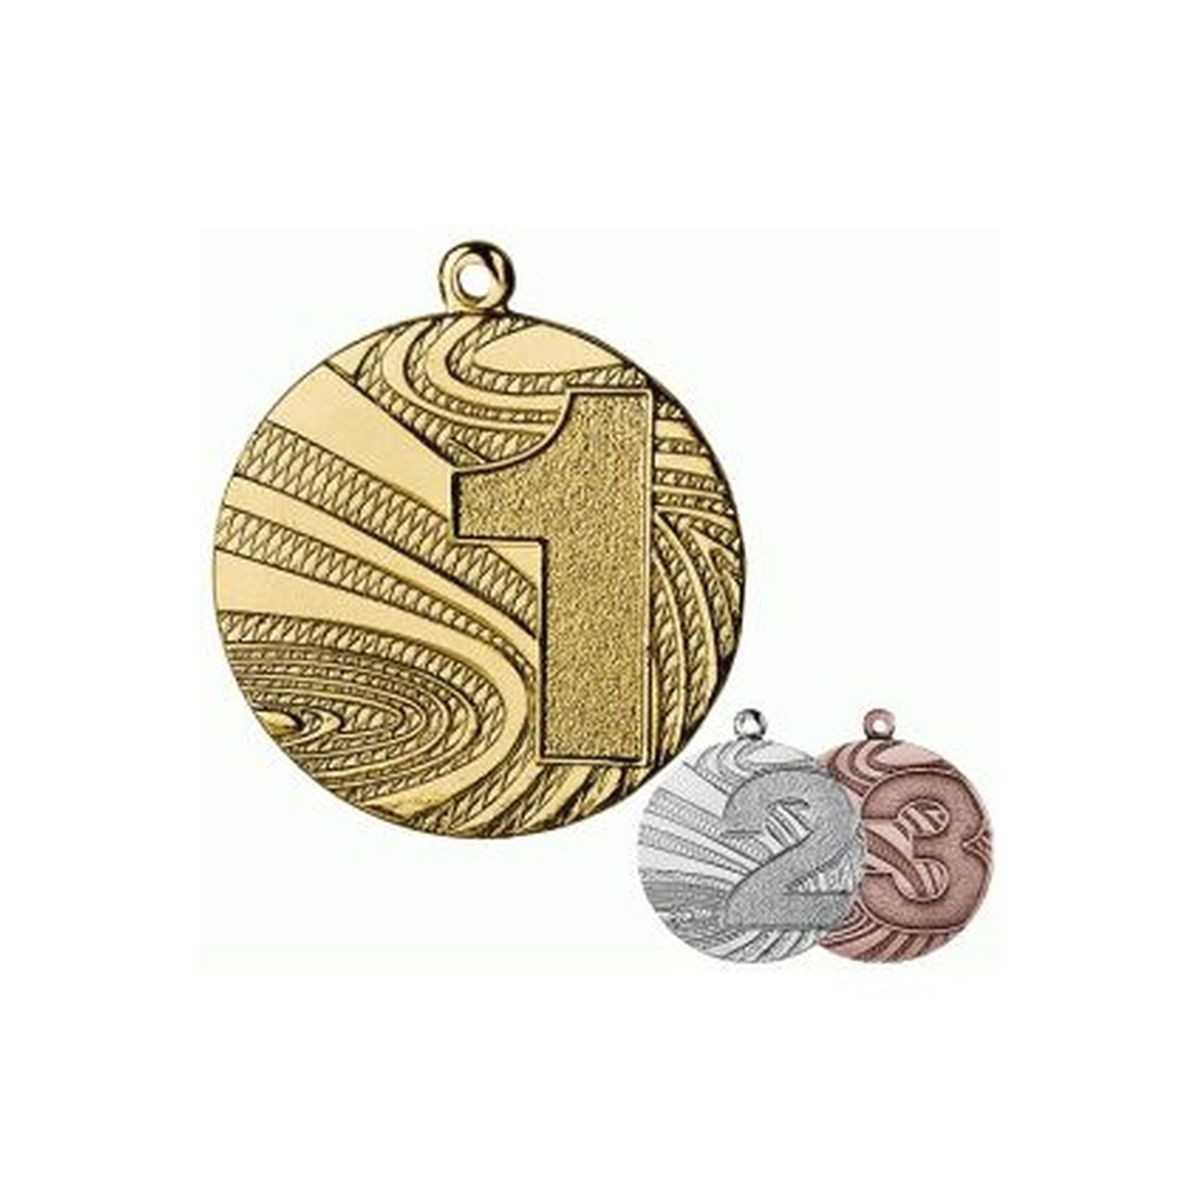 Plieninis medalis - Pirmoji vieta, aukso spalvos